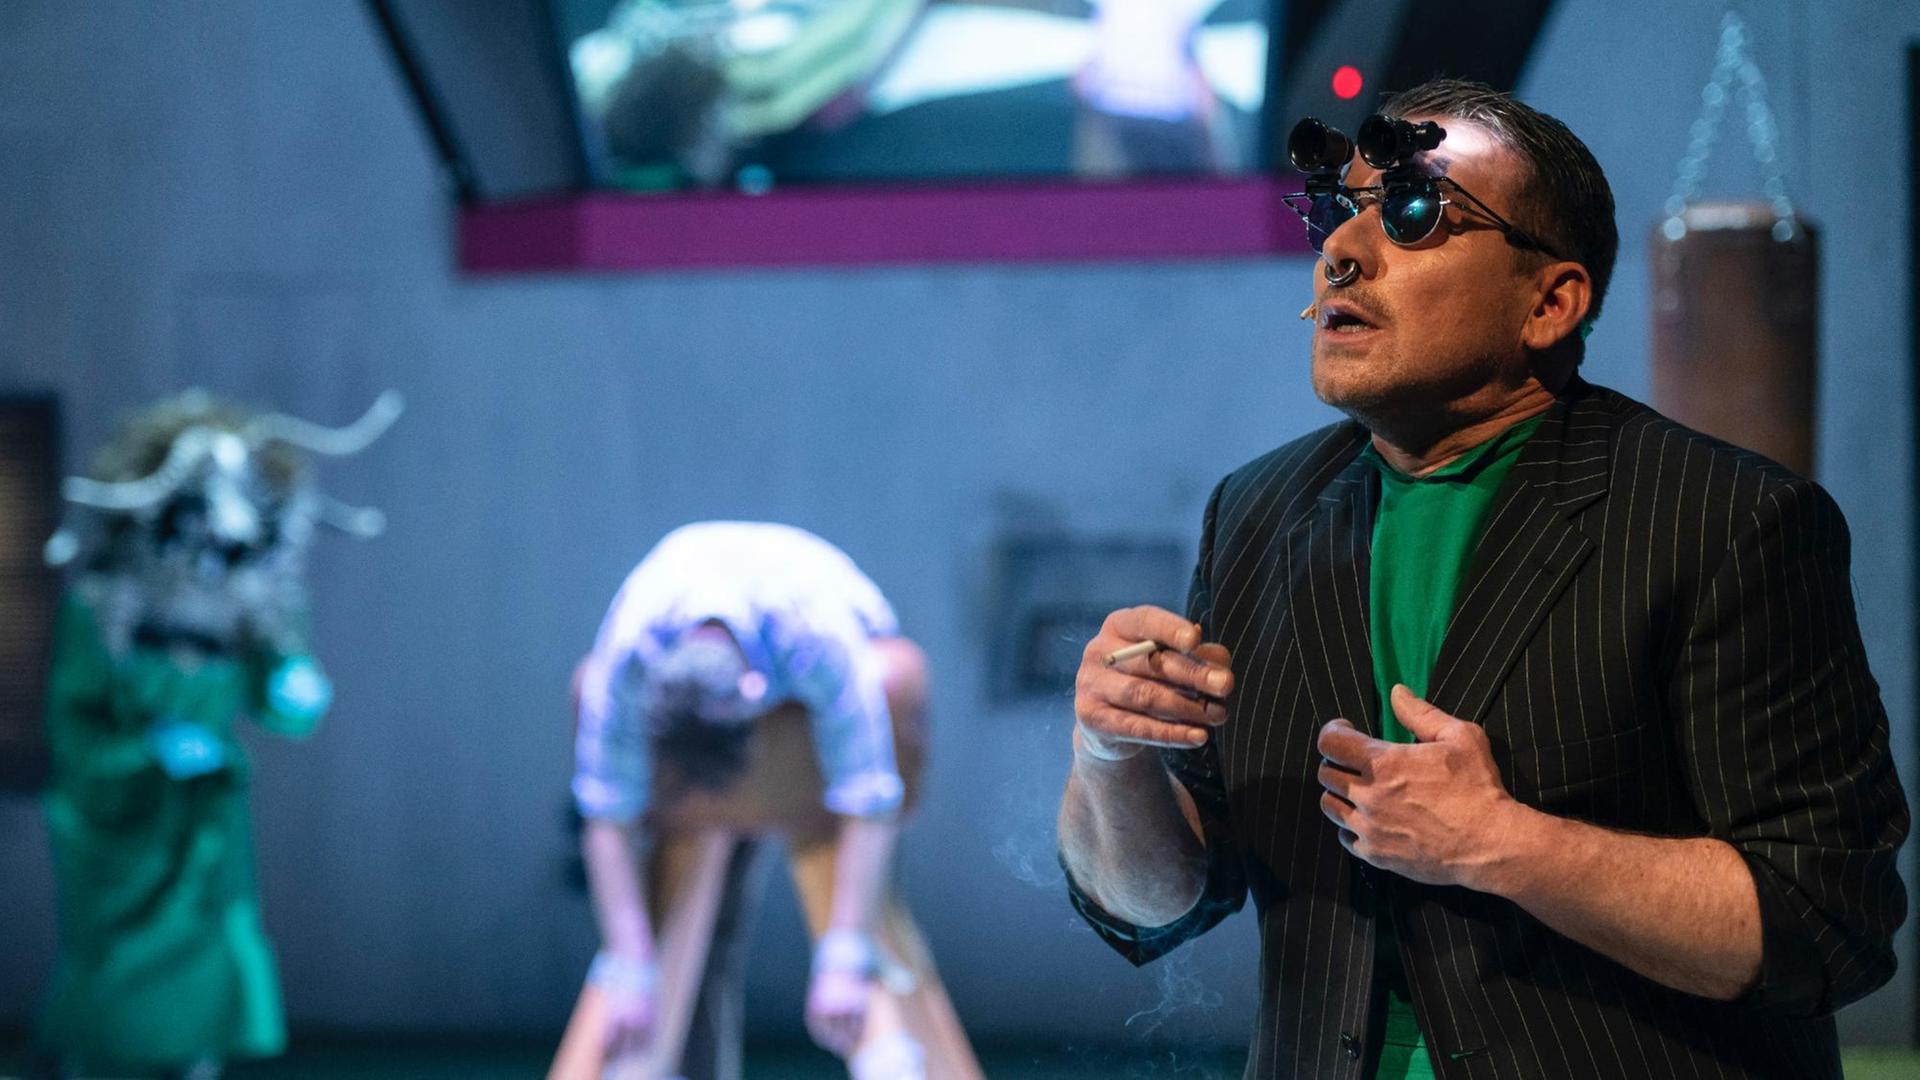 Bühnenszenario: Im Vordergrund steht ein Schauspieler mit Zigarette in der Hand. Er trägt Sonnenbrille mit einem aufgesteckten Fernglas. Im Hintergrund in der Unschärfe weitere Schauspieler.